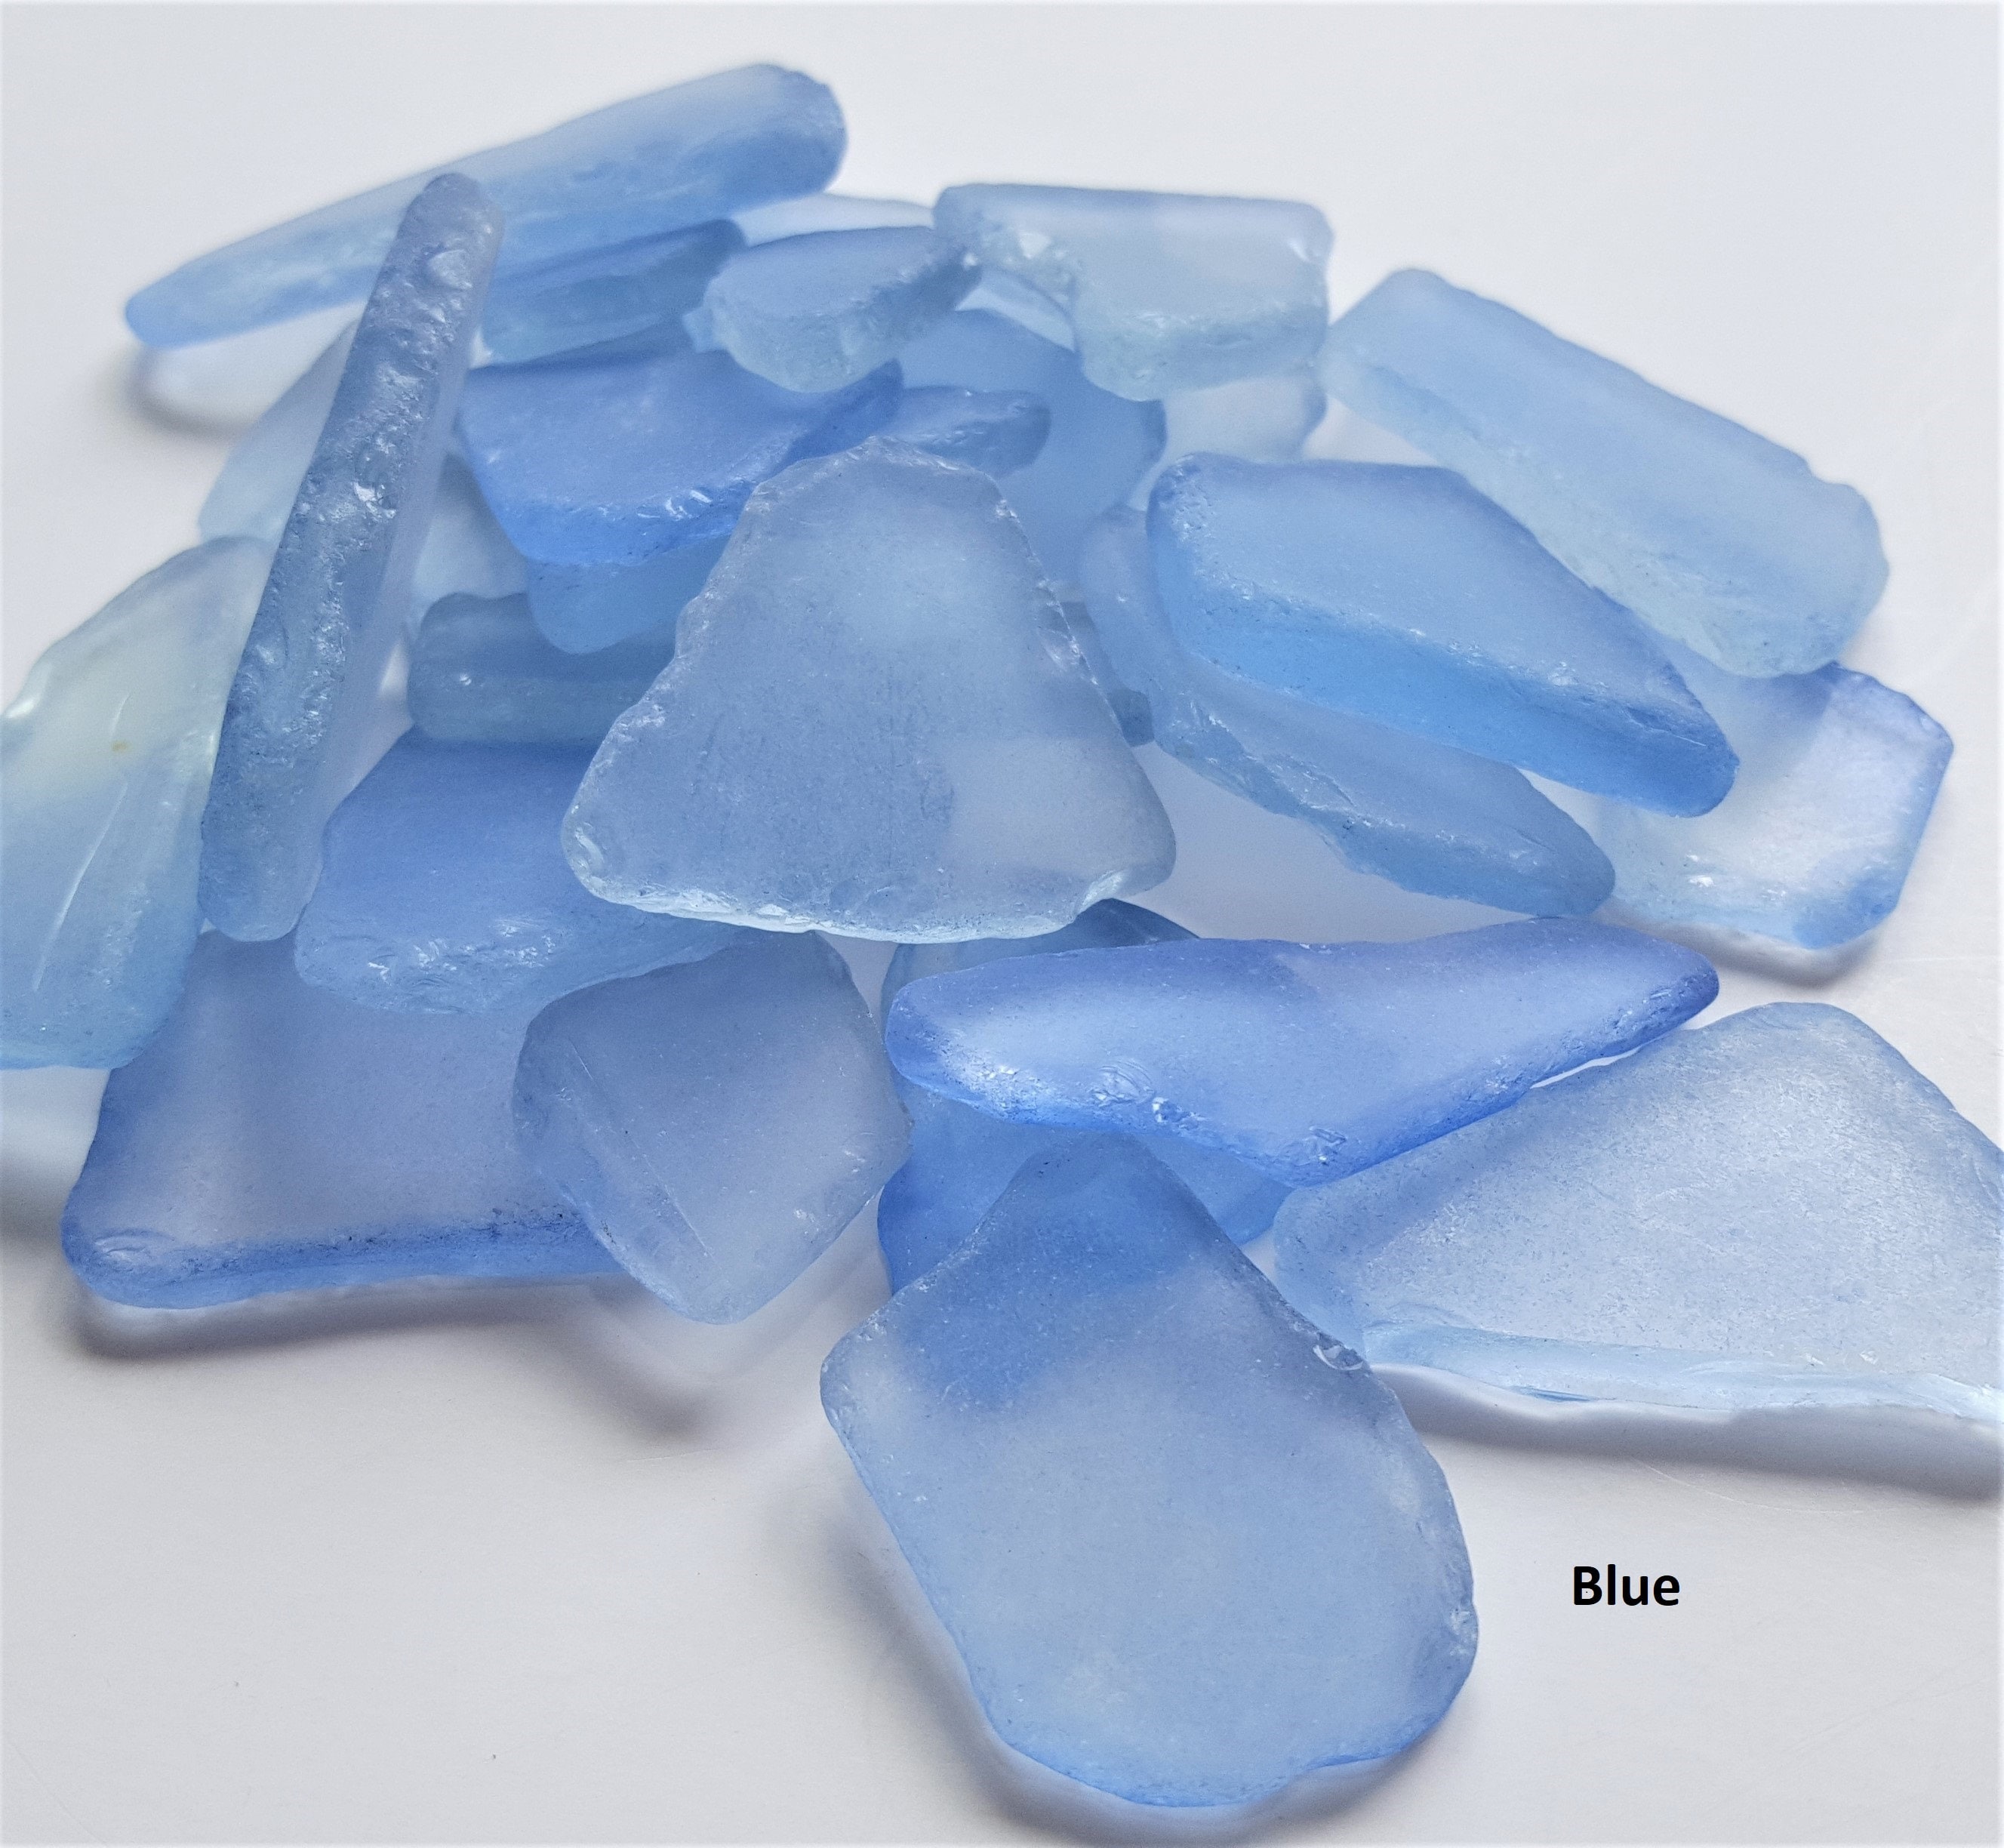 Sea Glass | 11oz Dark Blue Bulk Seaglass Pieces for Decor & Crafts